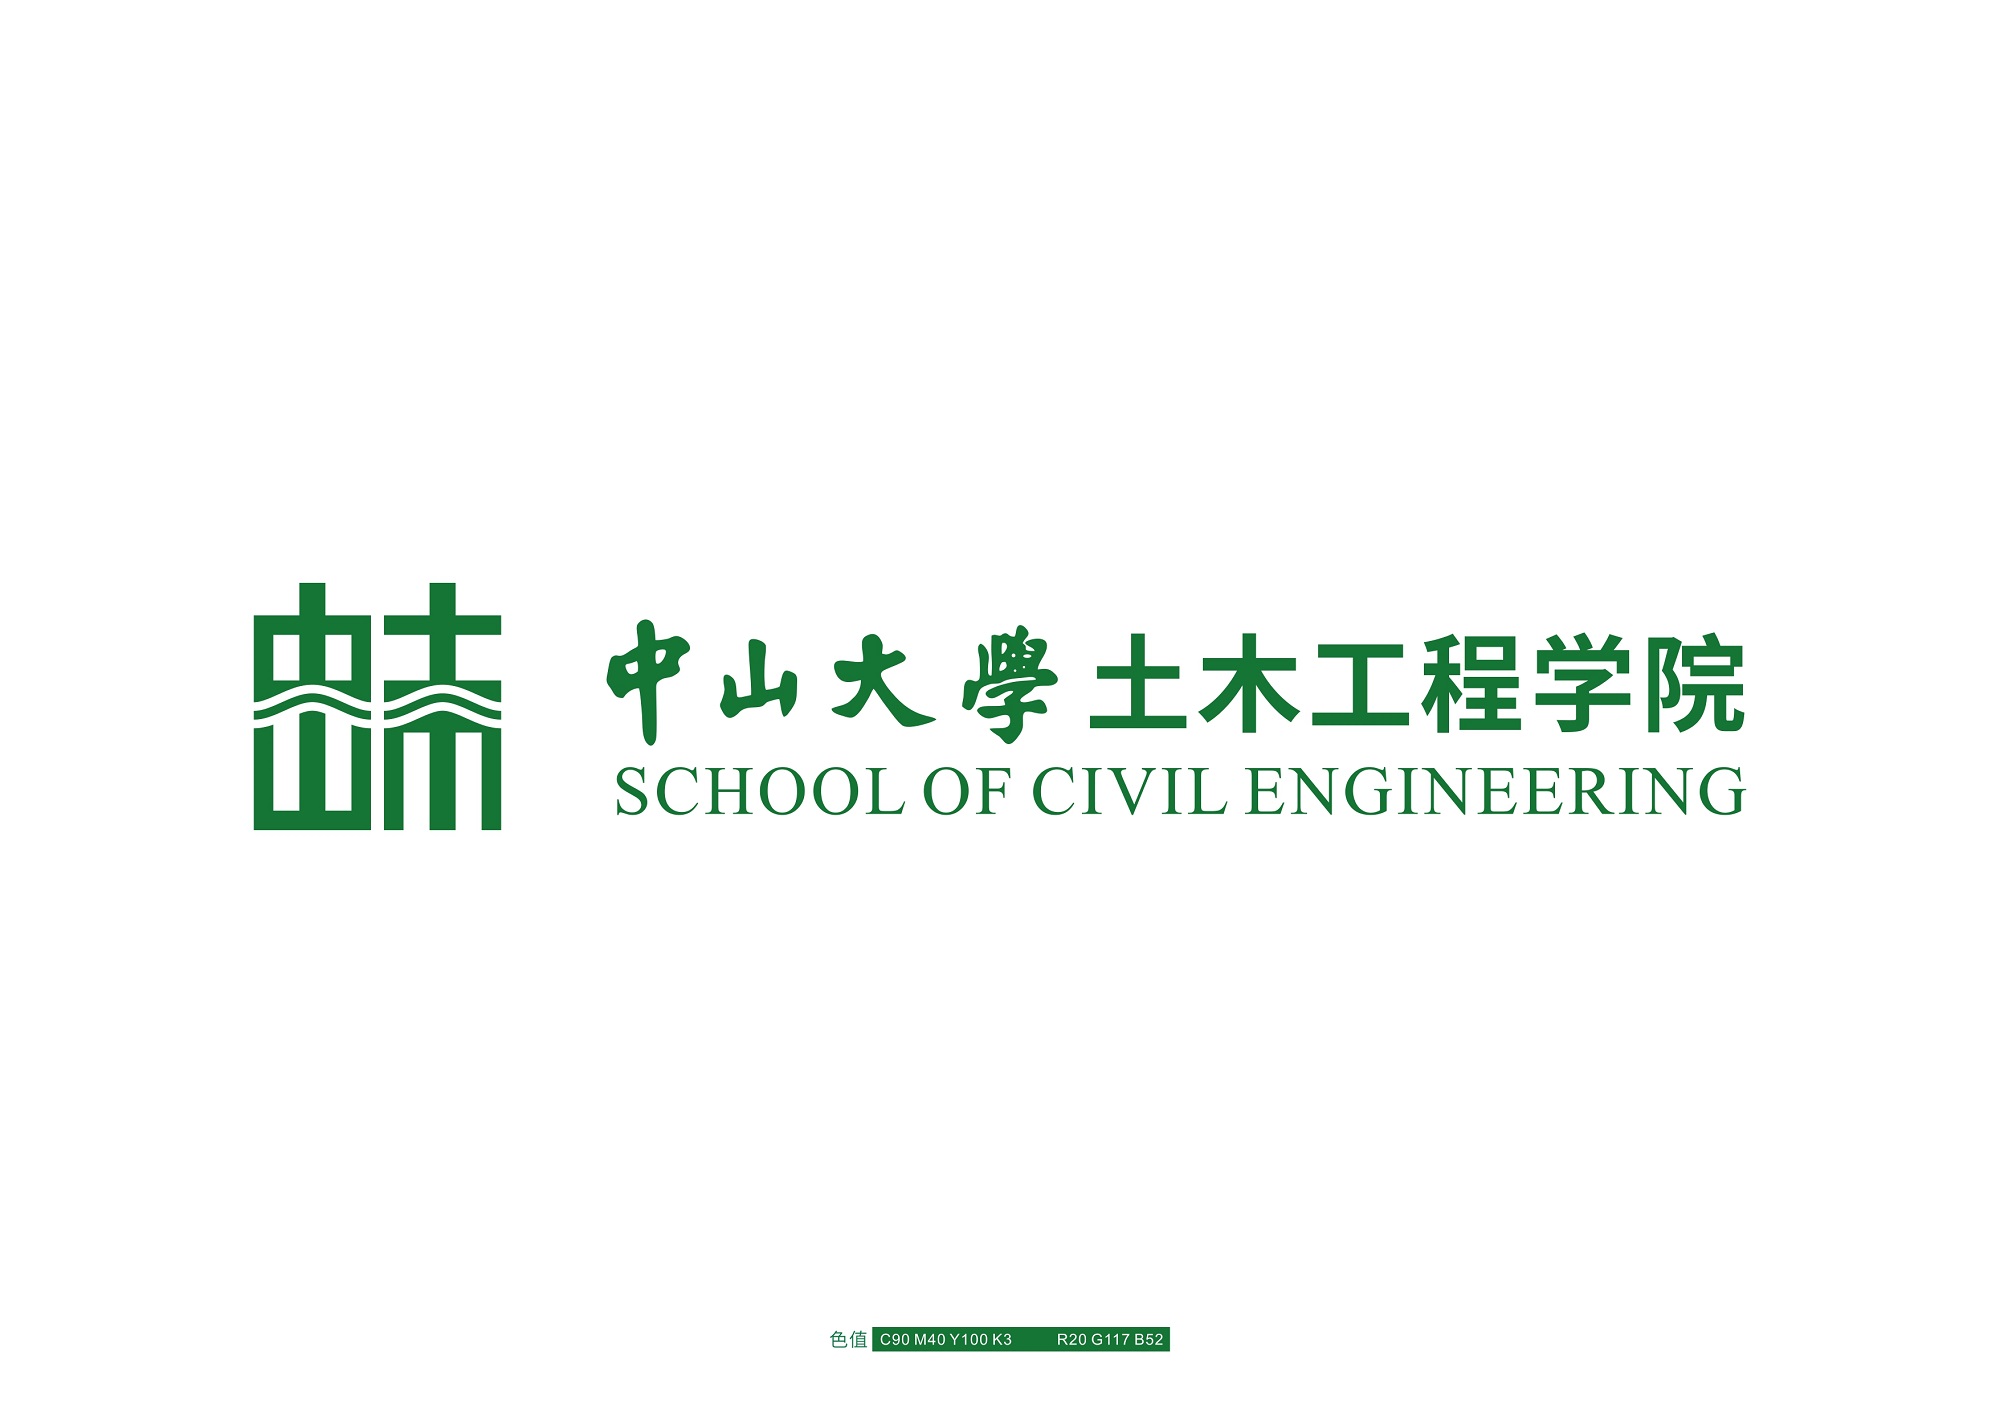 中山大学土木工程学院院徽设计提案